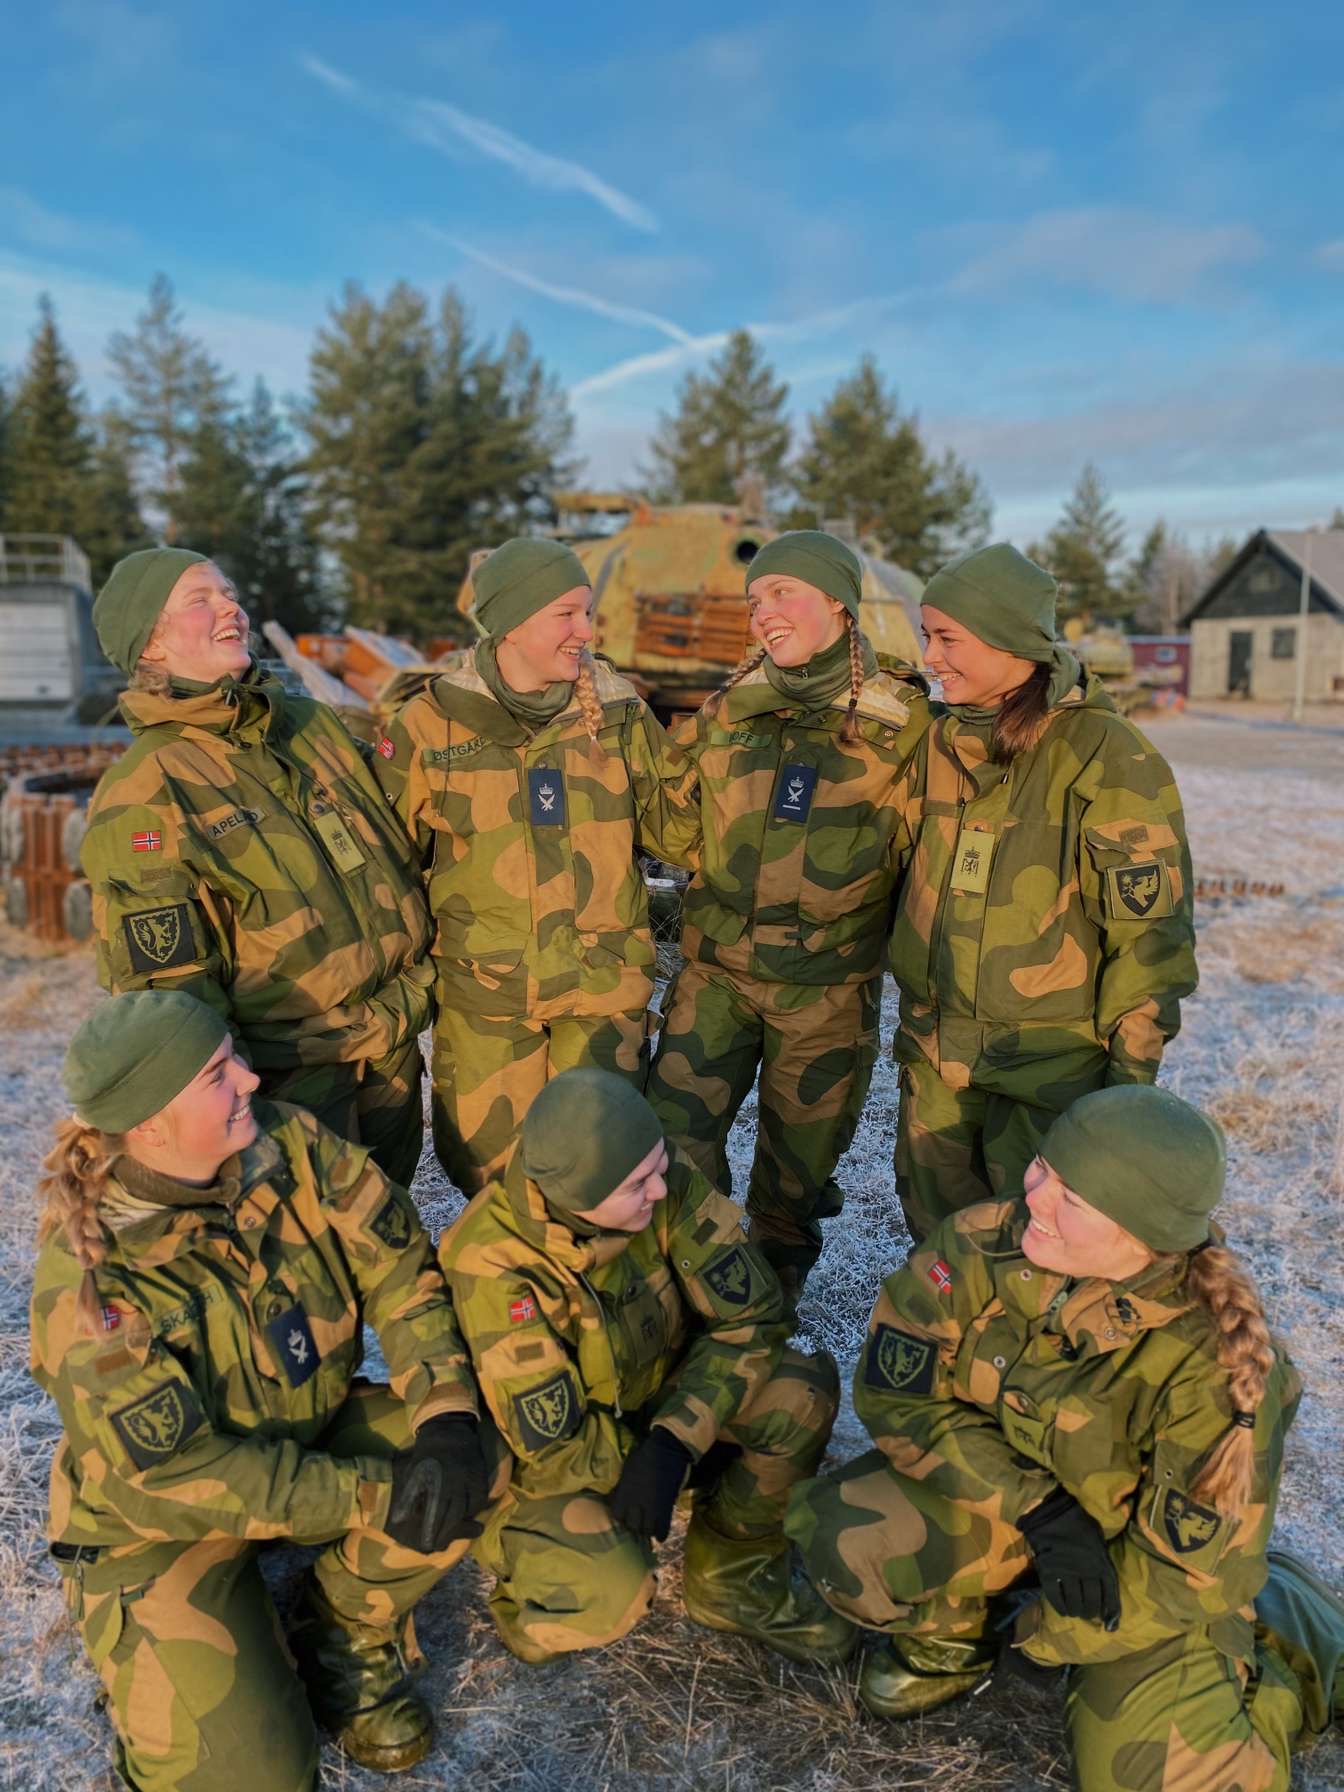 En gjeng med kvinnelige soldater i uniform smiler mot hverandre.